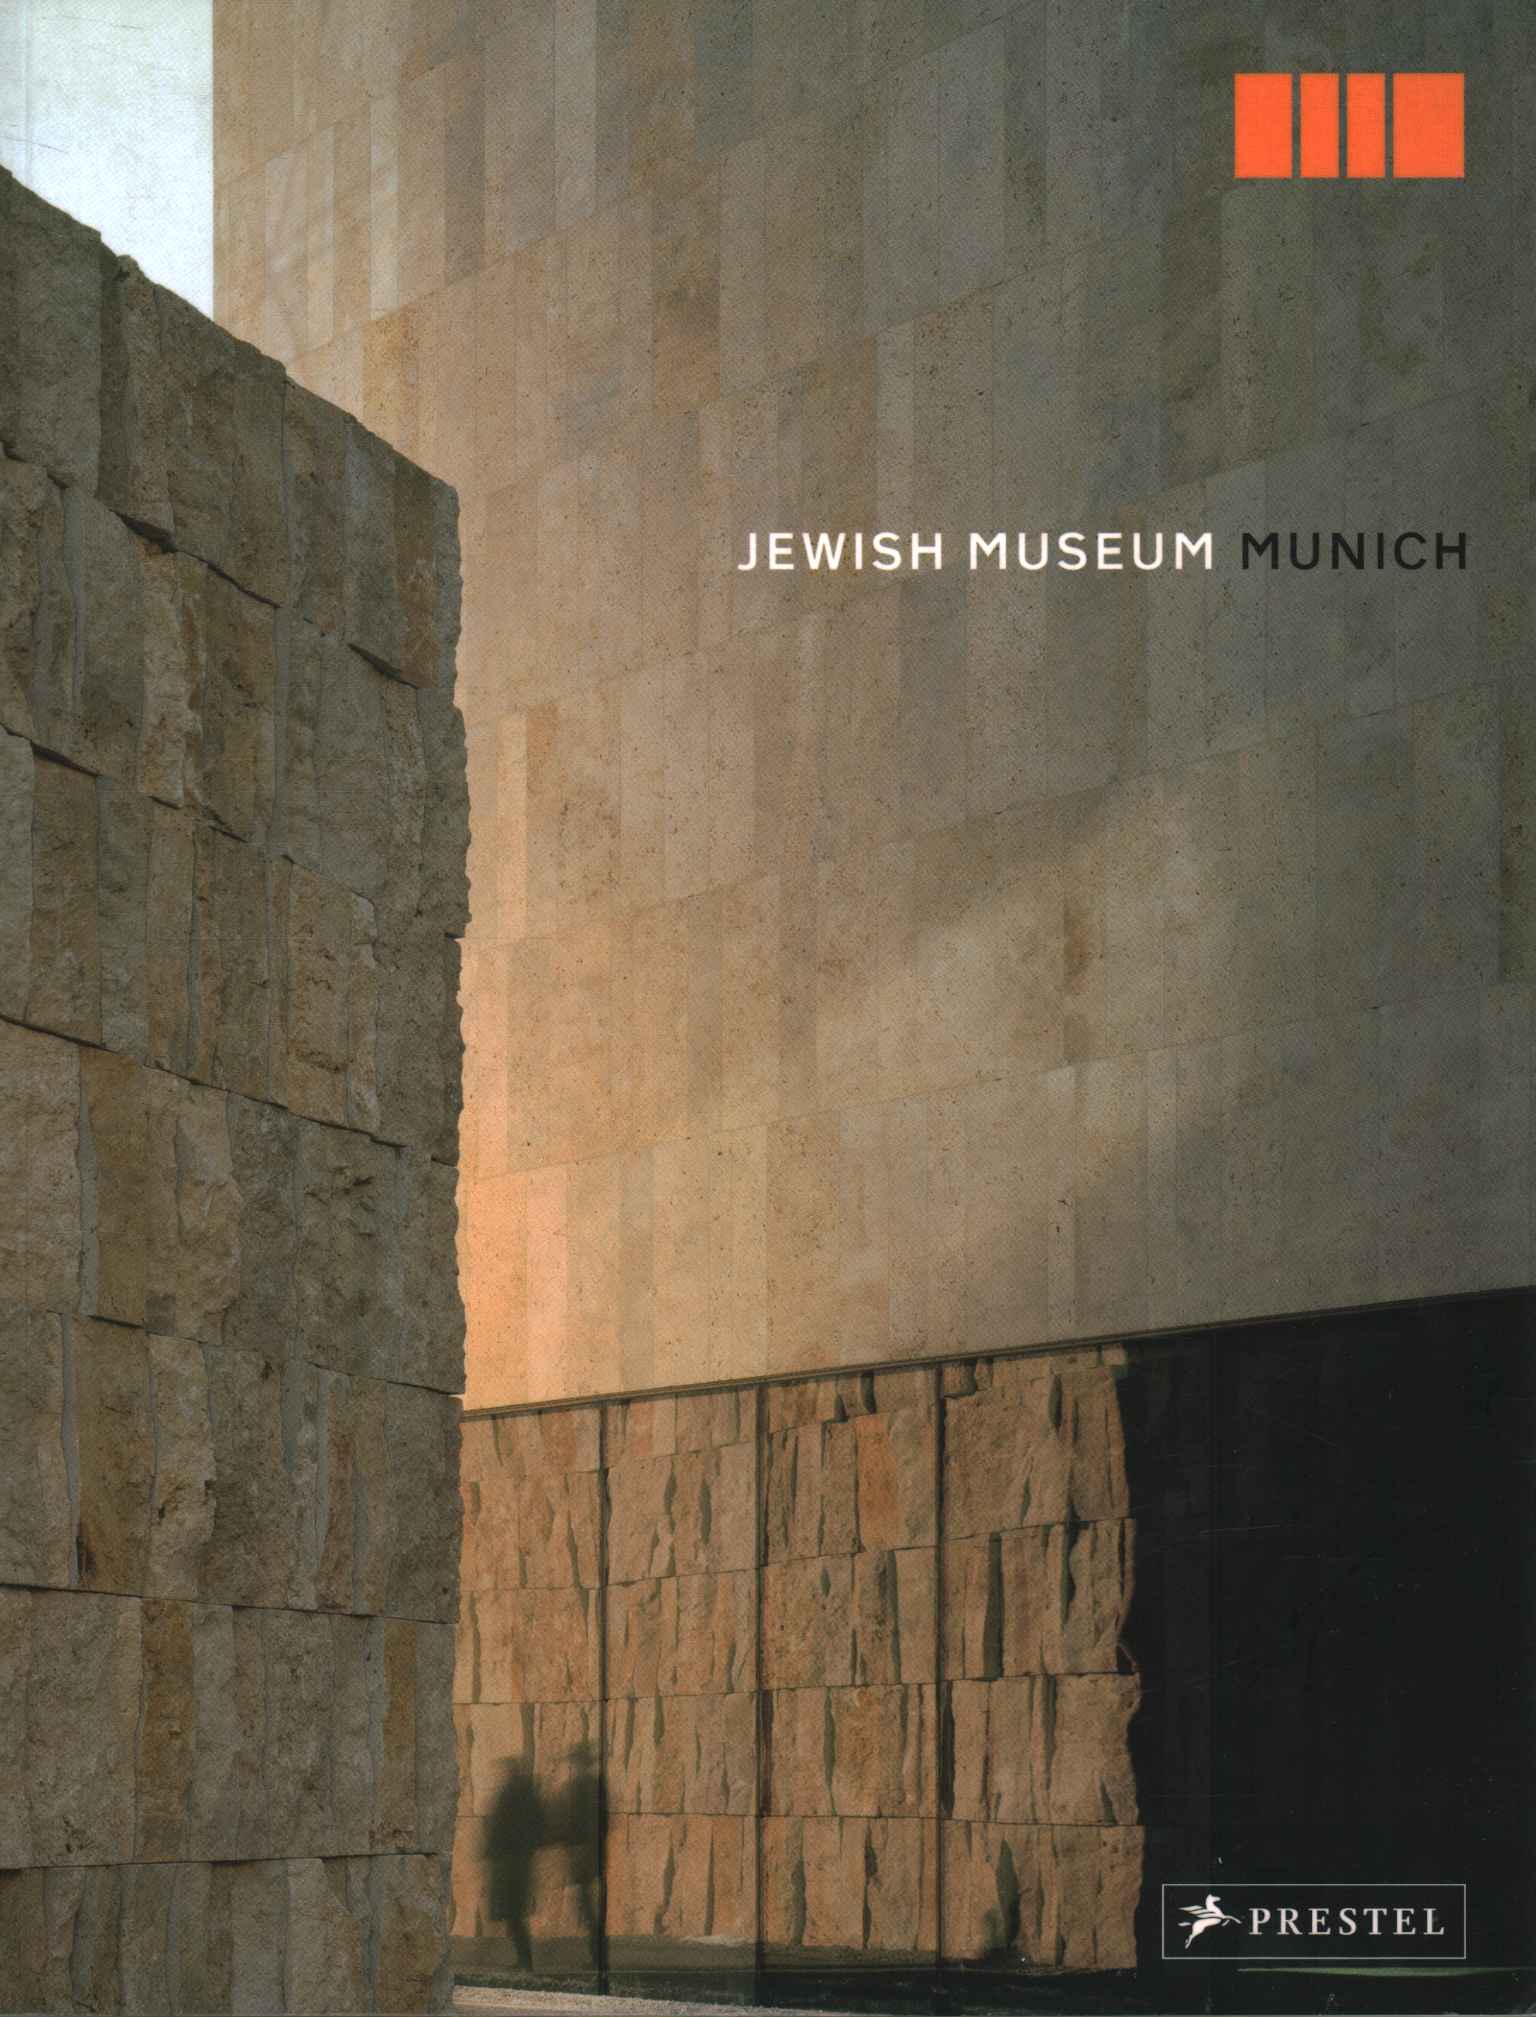 Musée juif de Munich. Jewisg%2,Jüdisches Museum München. Juif%2